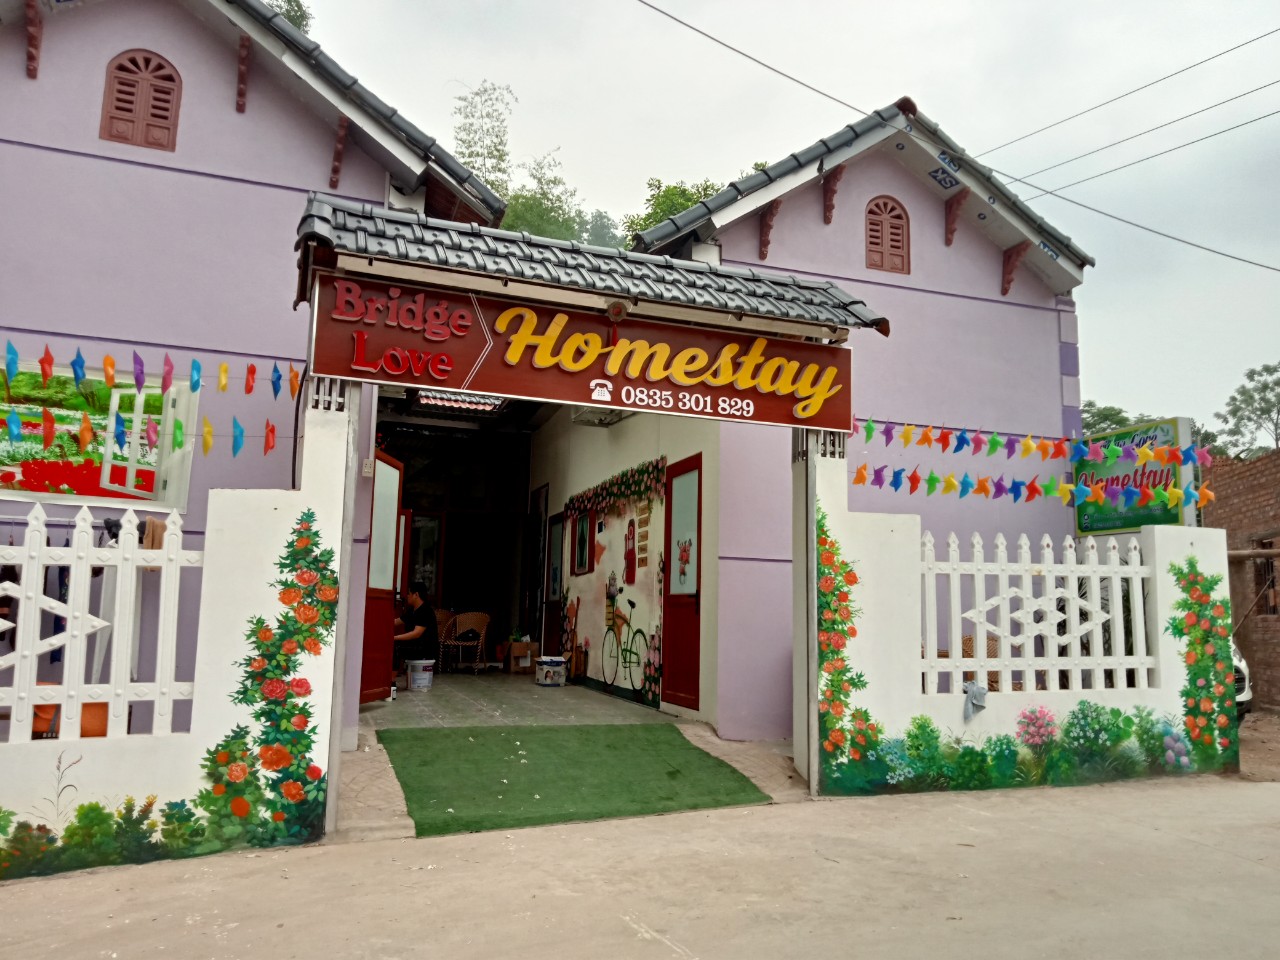 Bridge Love Homestay: Chốn an yên giữa thành phố Cao Bằng